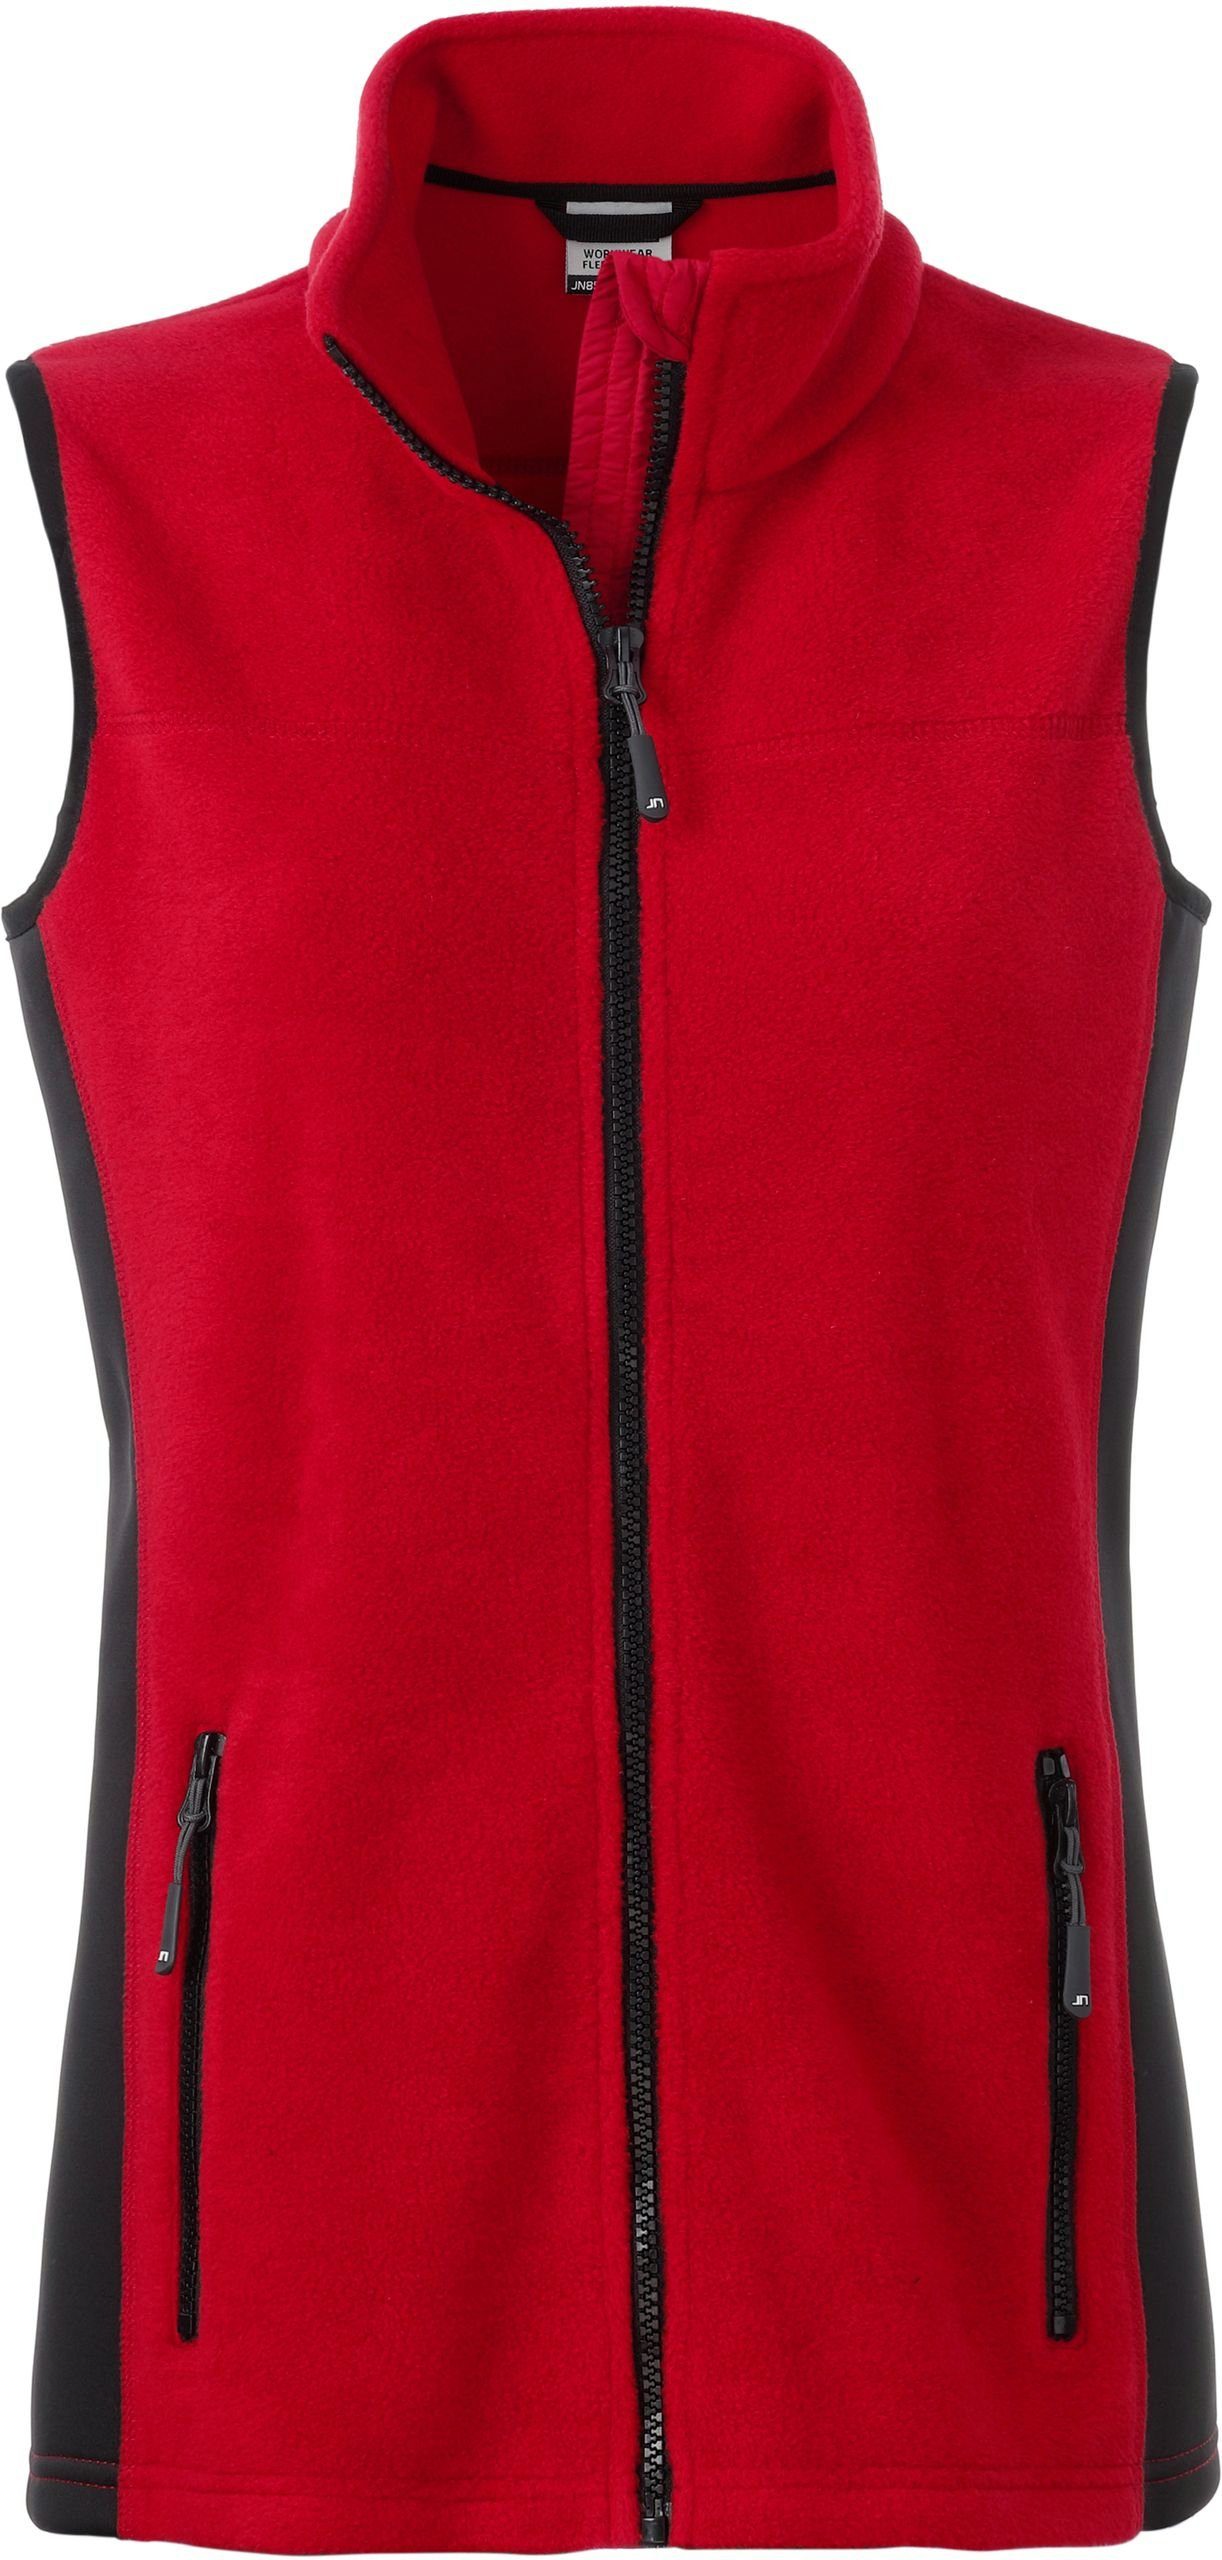 James & Nicholson Fleeceweste Workwear Fleece Gilet Weste FaS50855 RED/BLACK